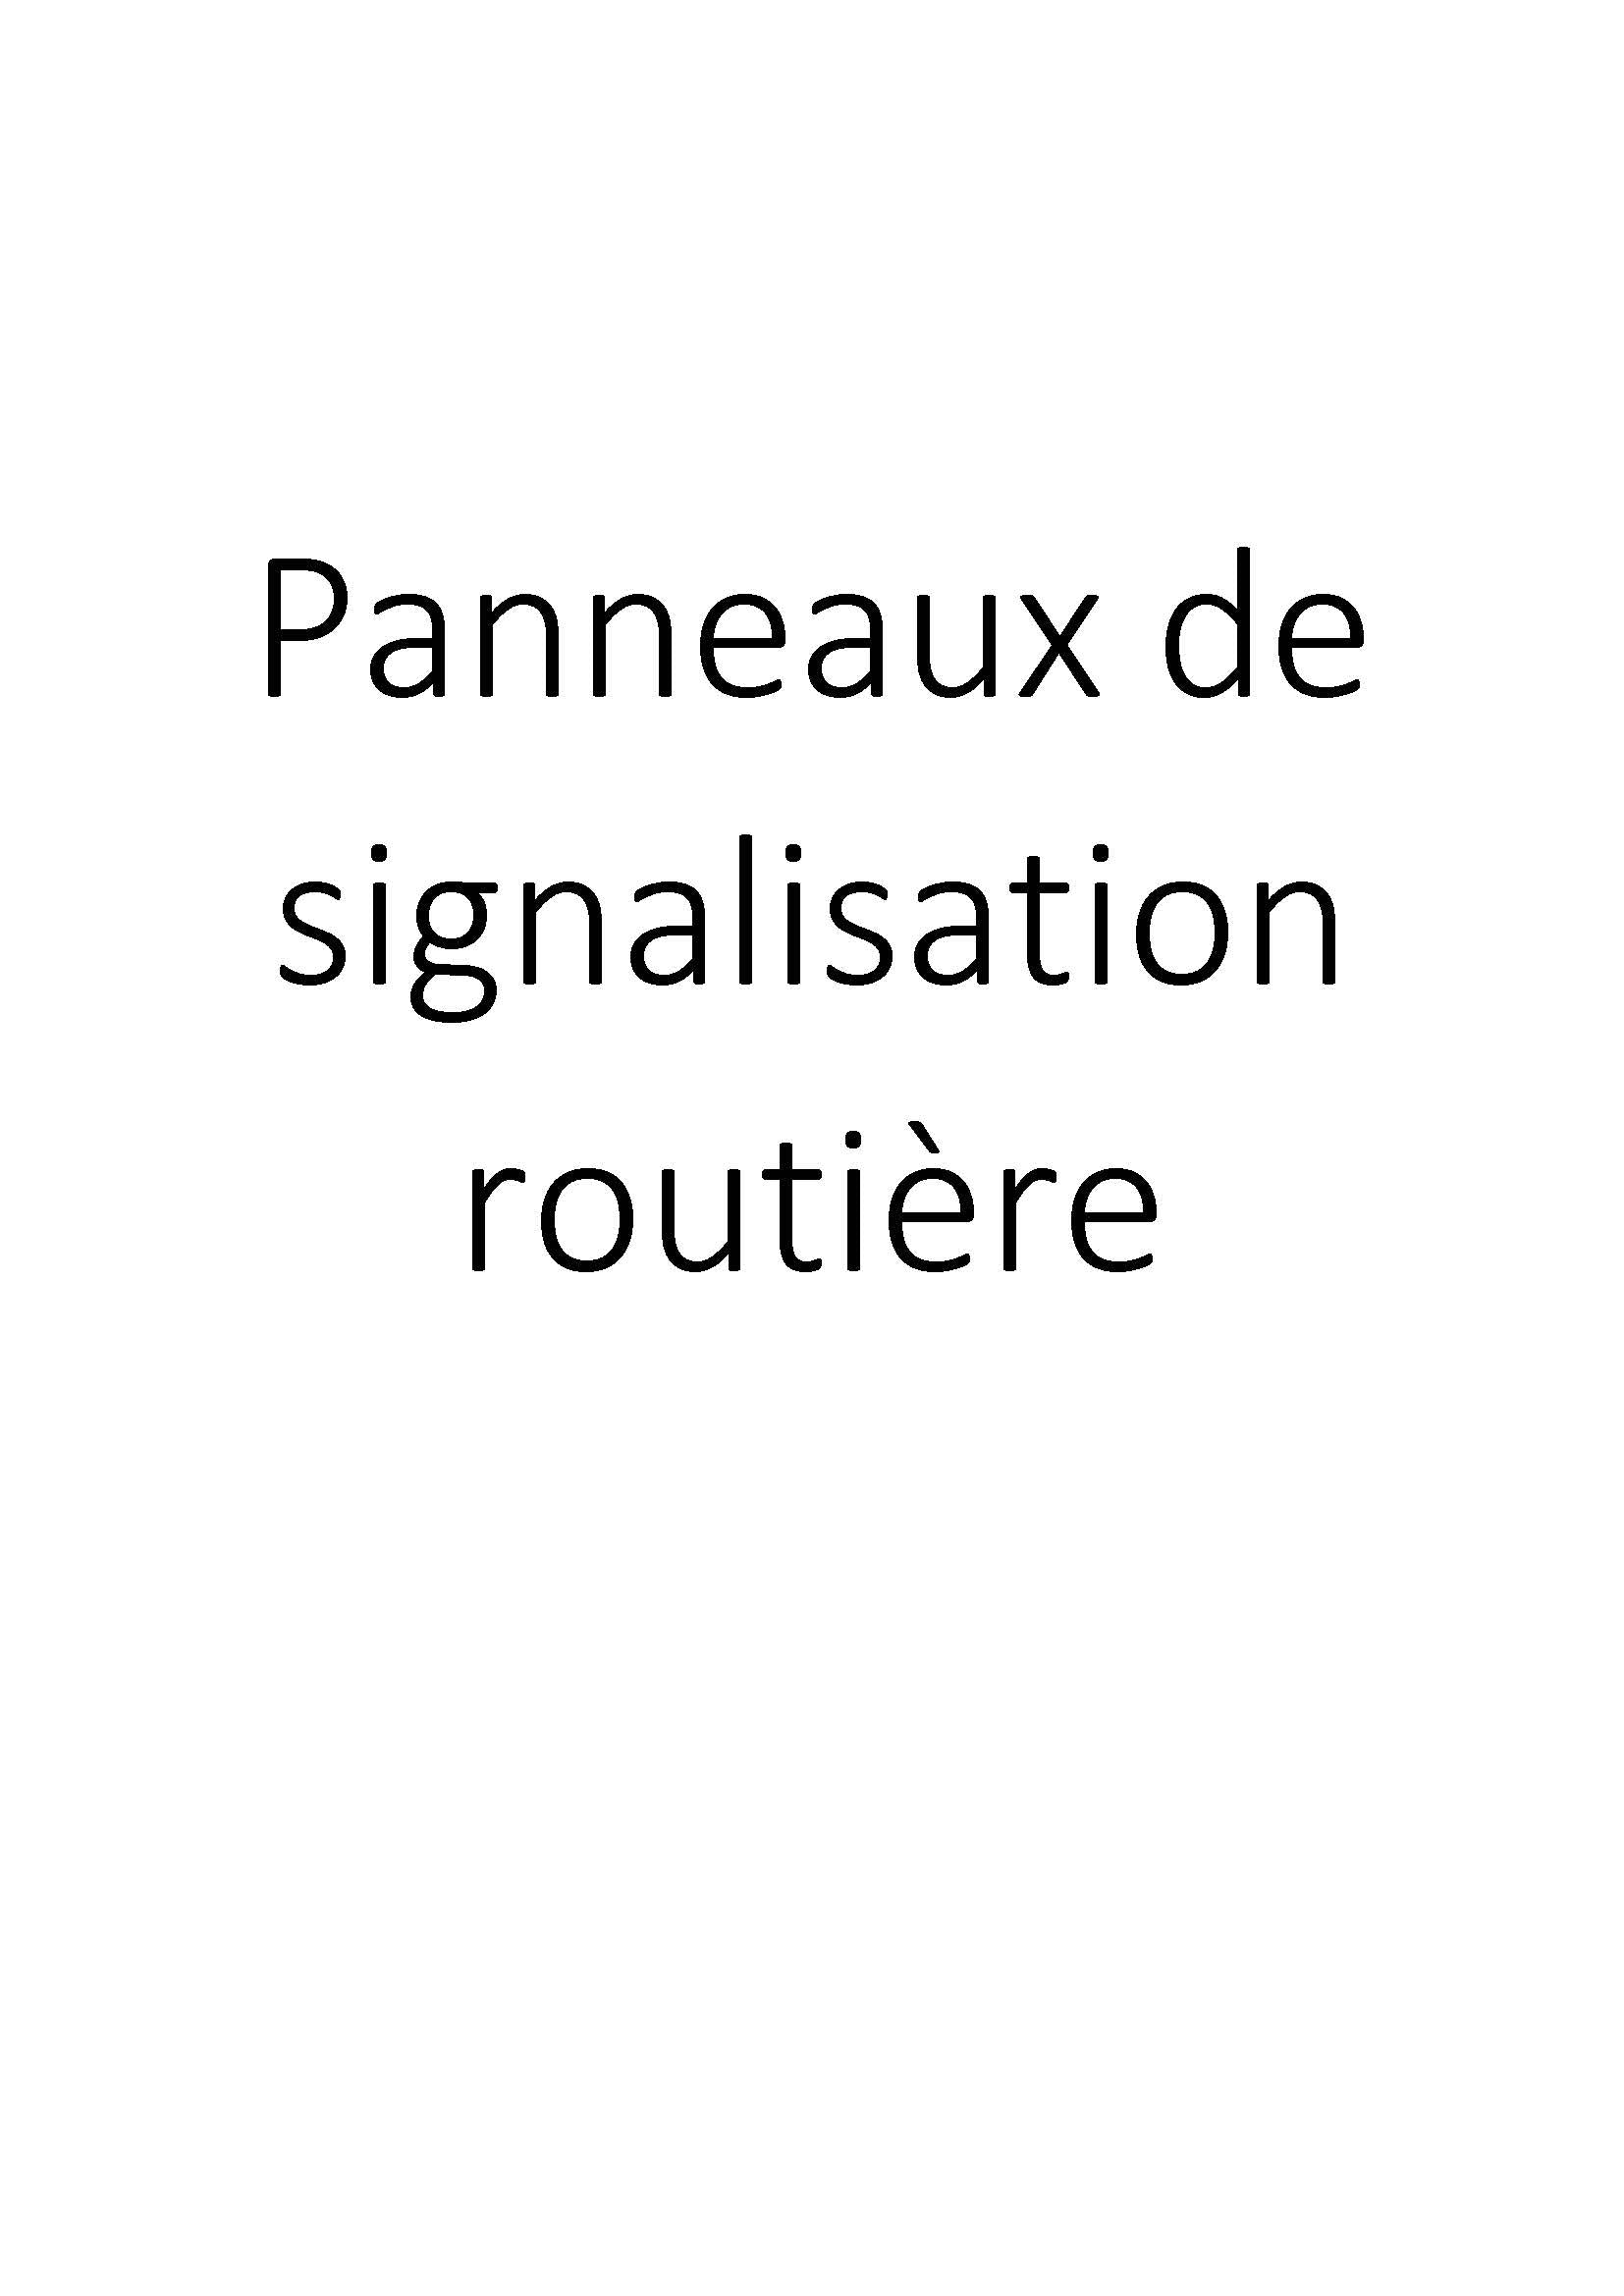 Panneaux de signalisation routière clicktofournisseur.com